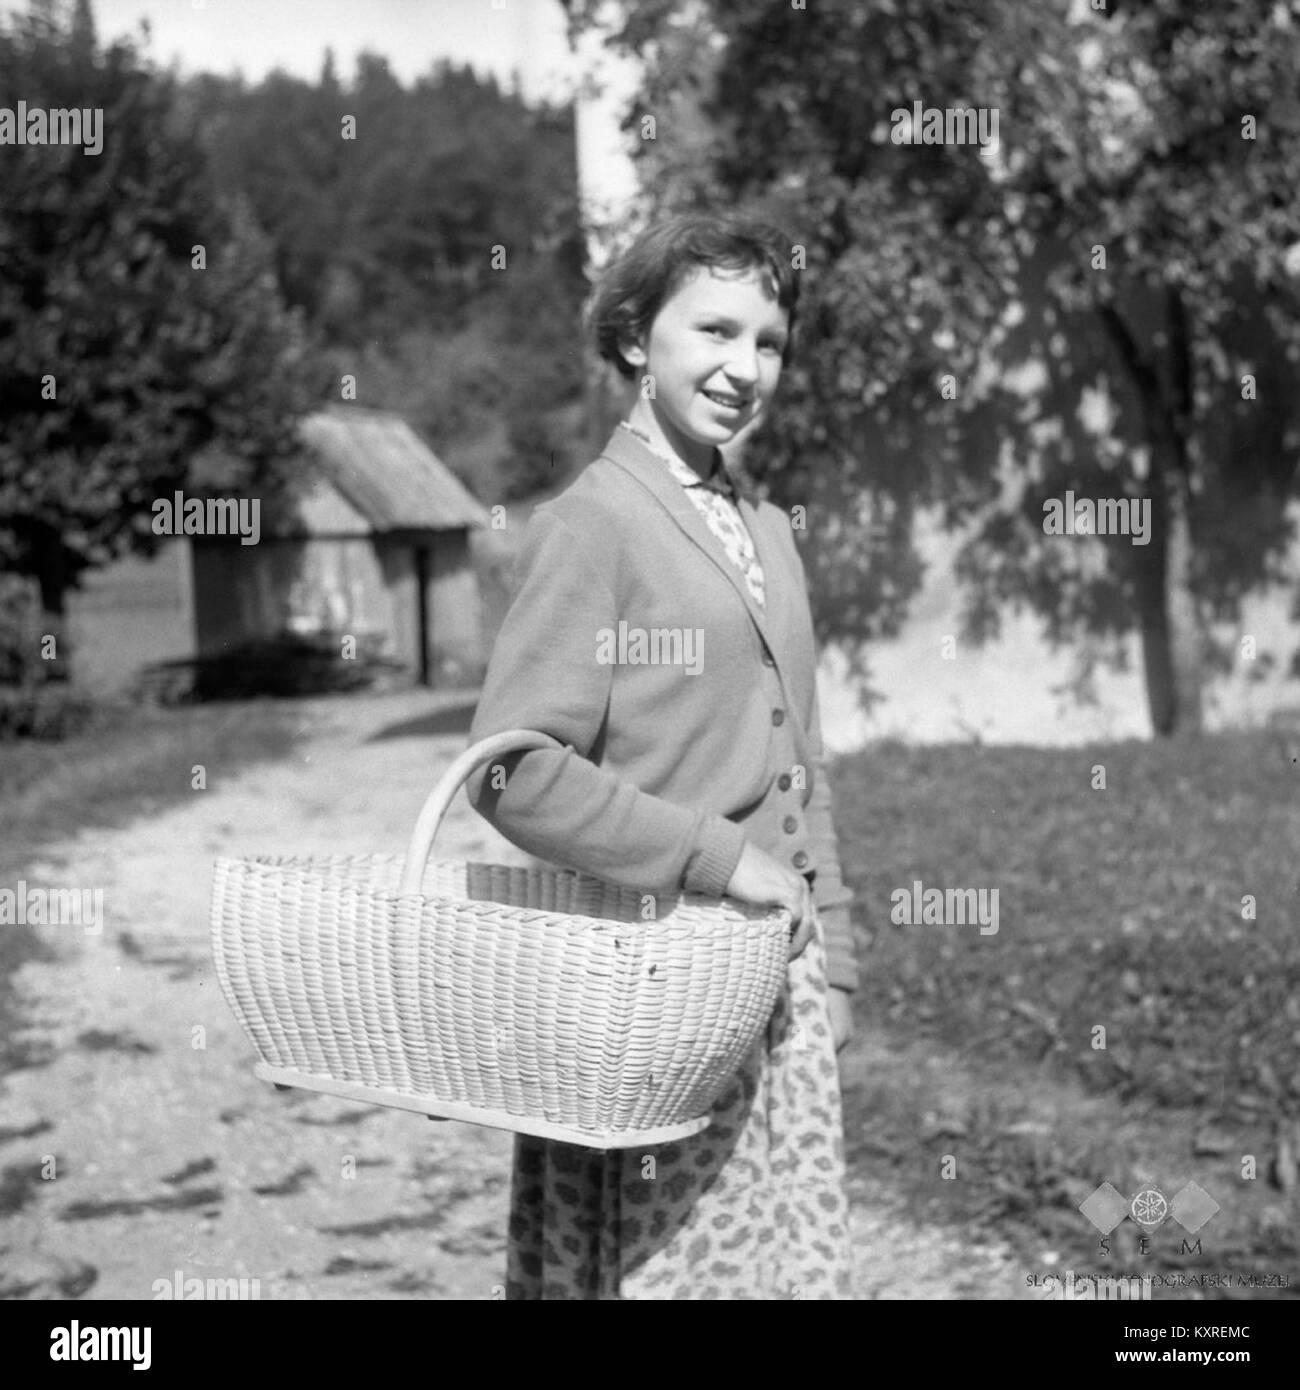 Cajna (košara) za krompir, solato in drugo drobnarijo, Zadlog 1959 Stock  Photo - Alamy